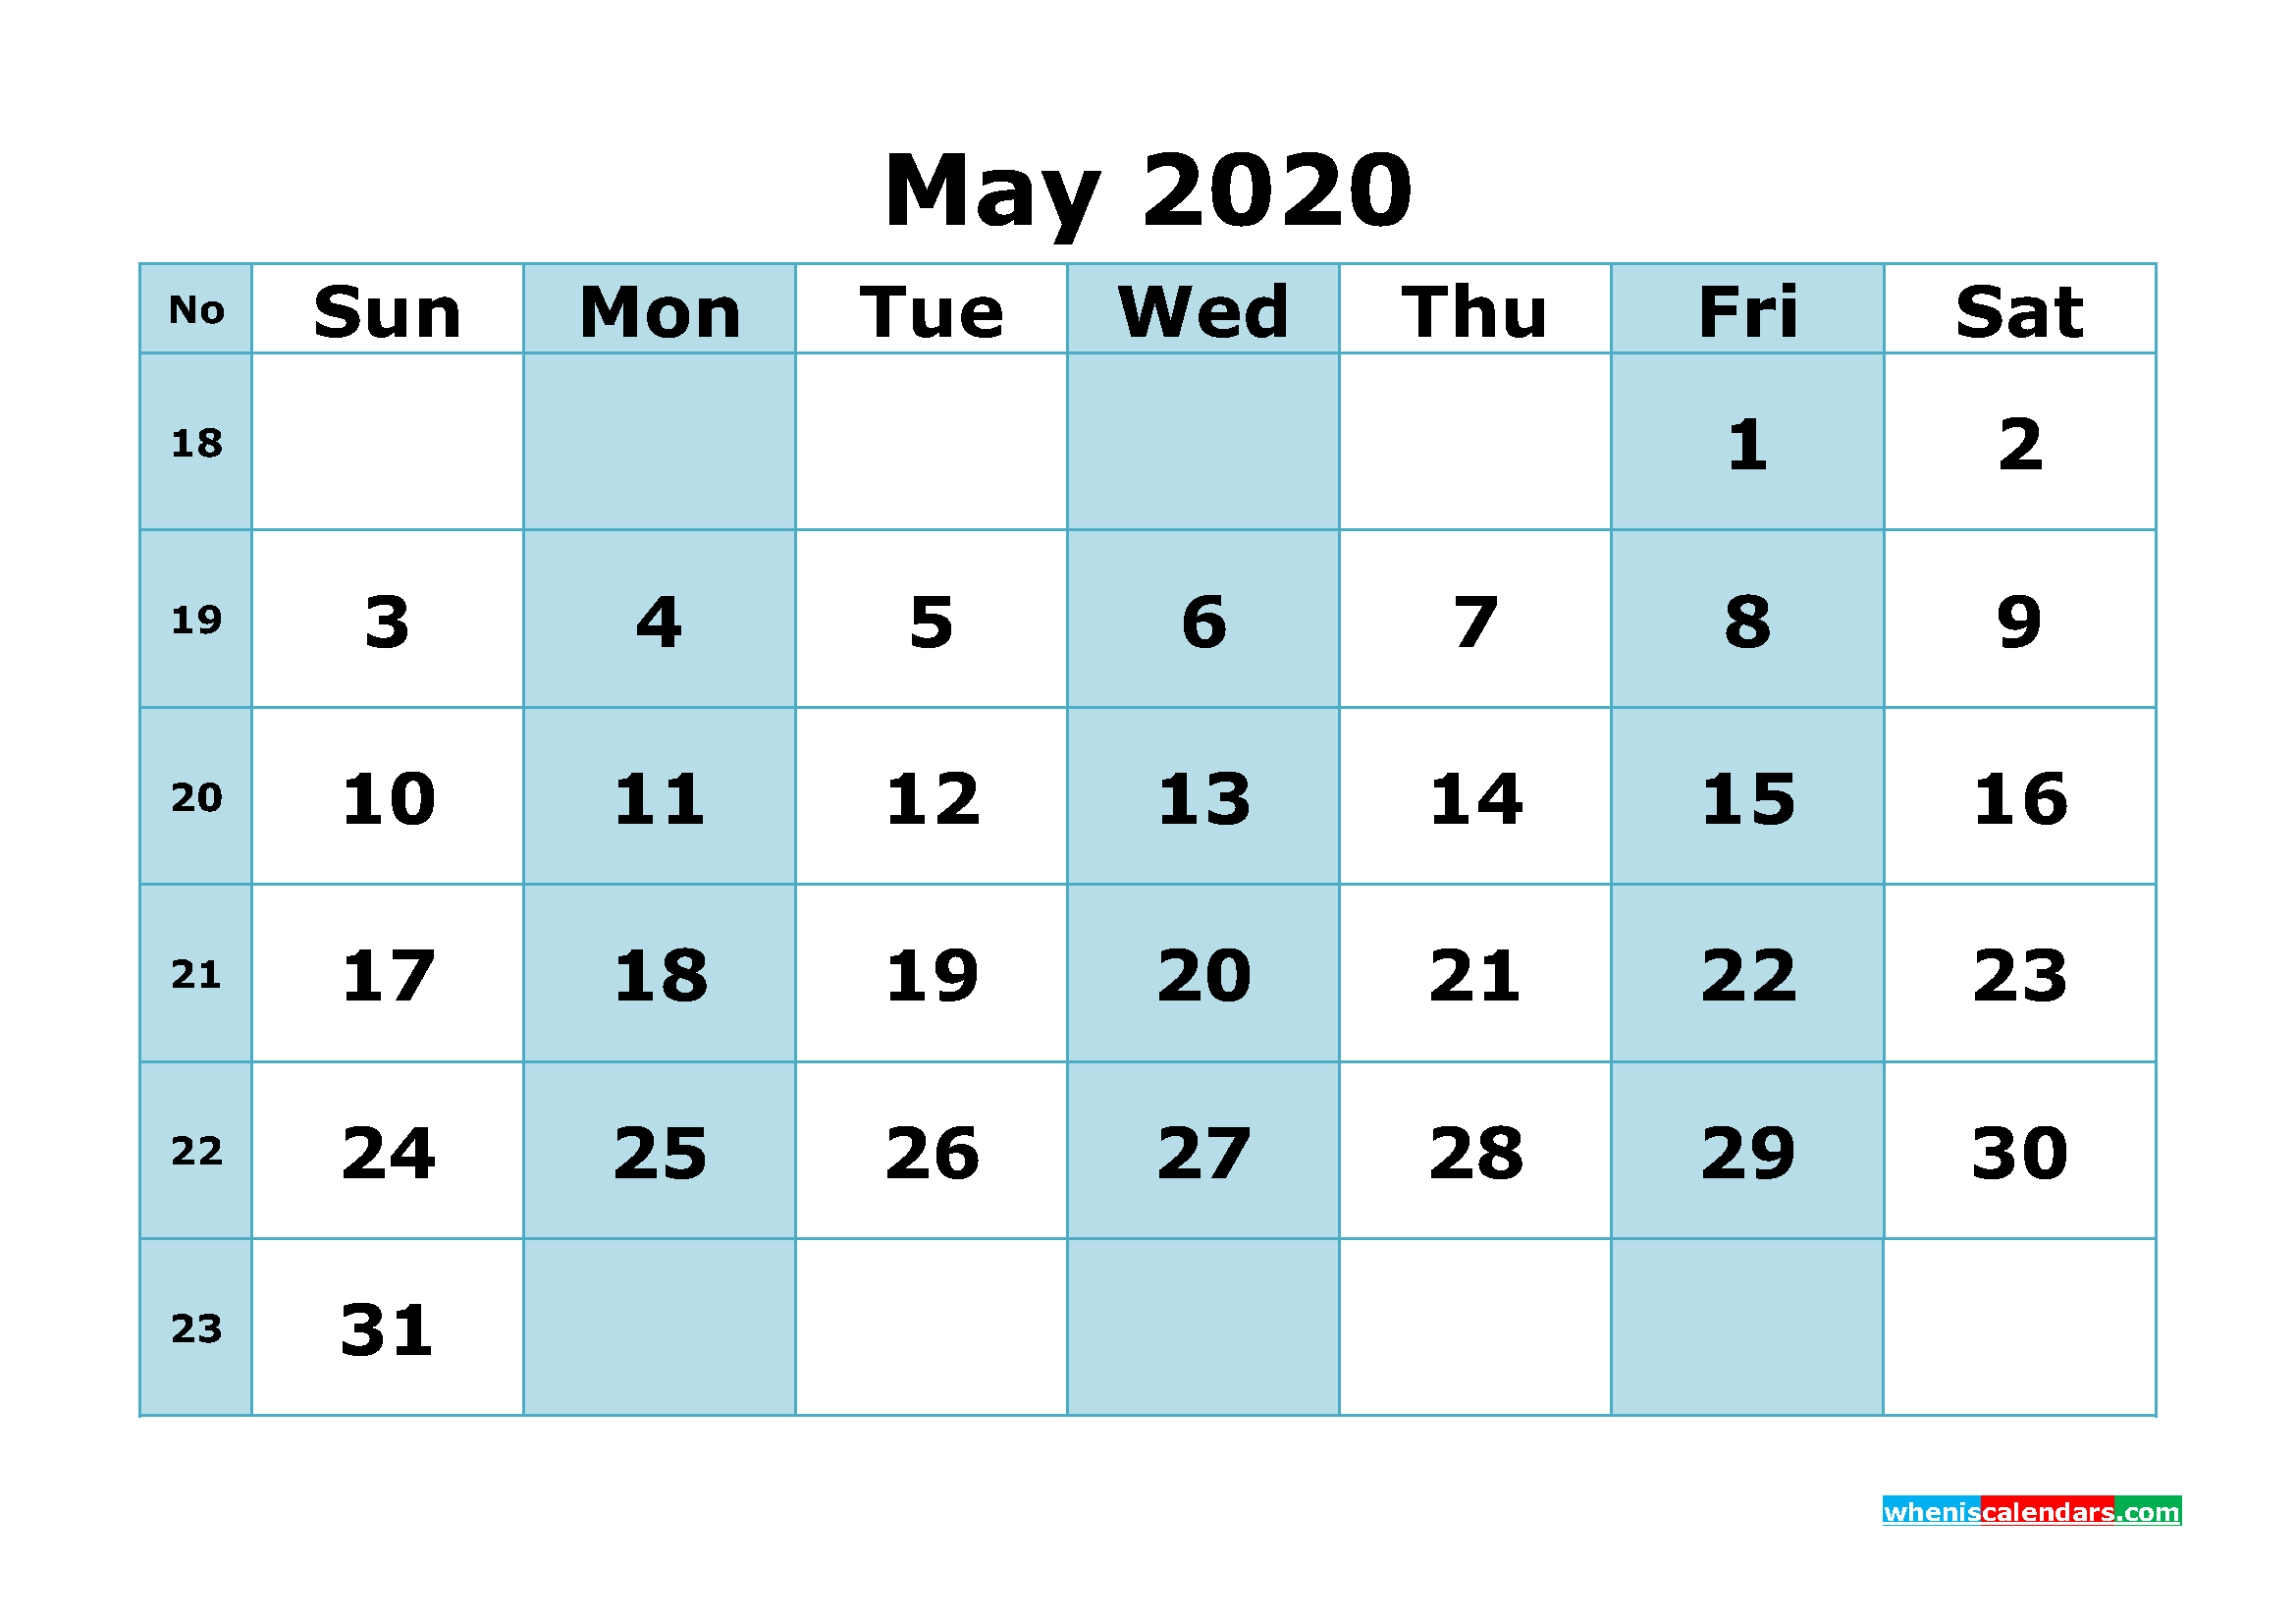 Free Printable May 2020 Calendar with Week Numbers